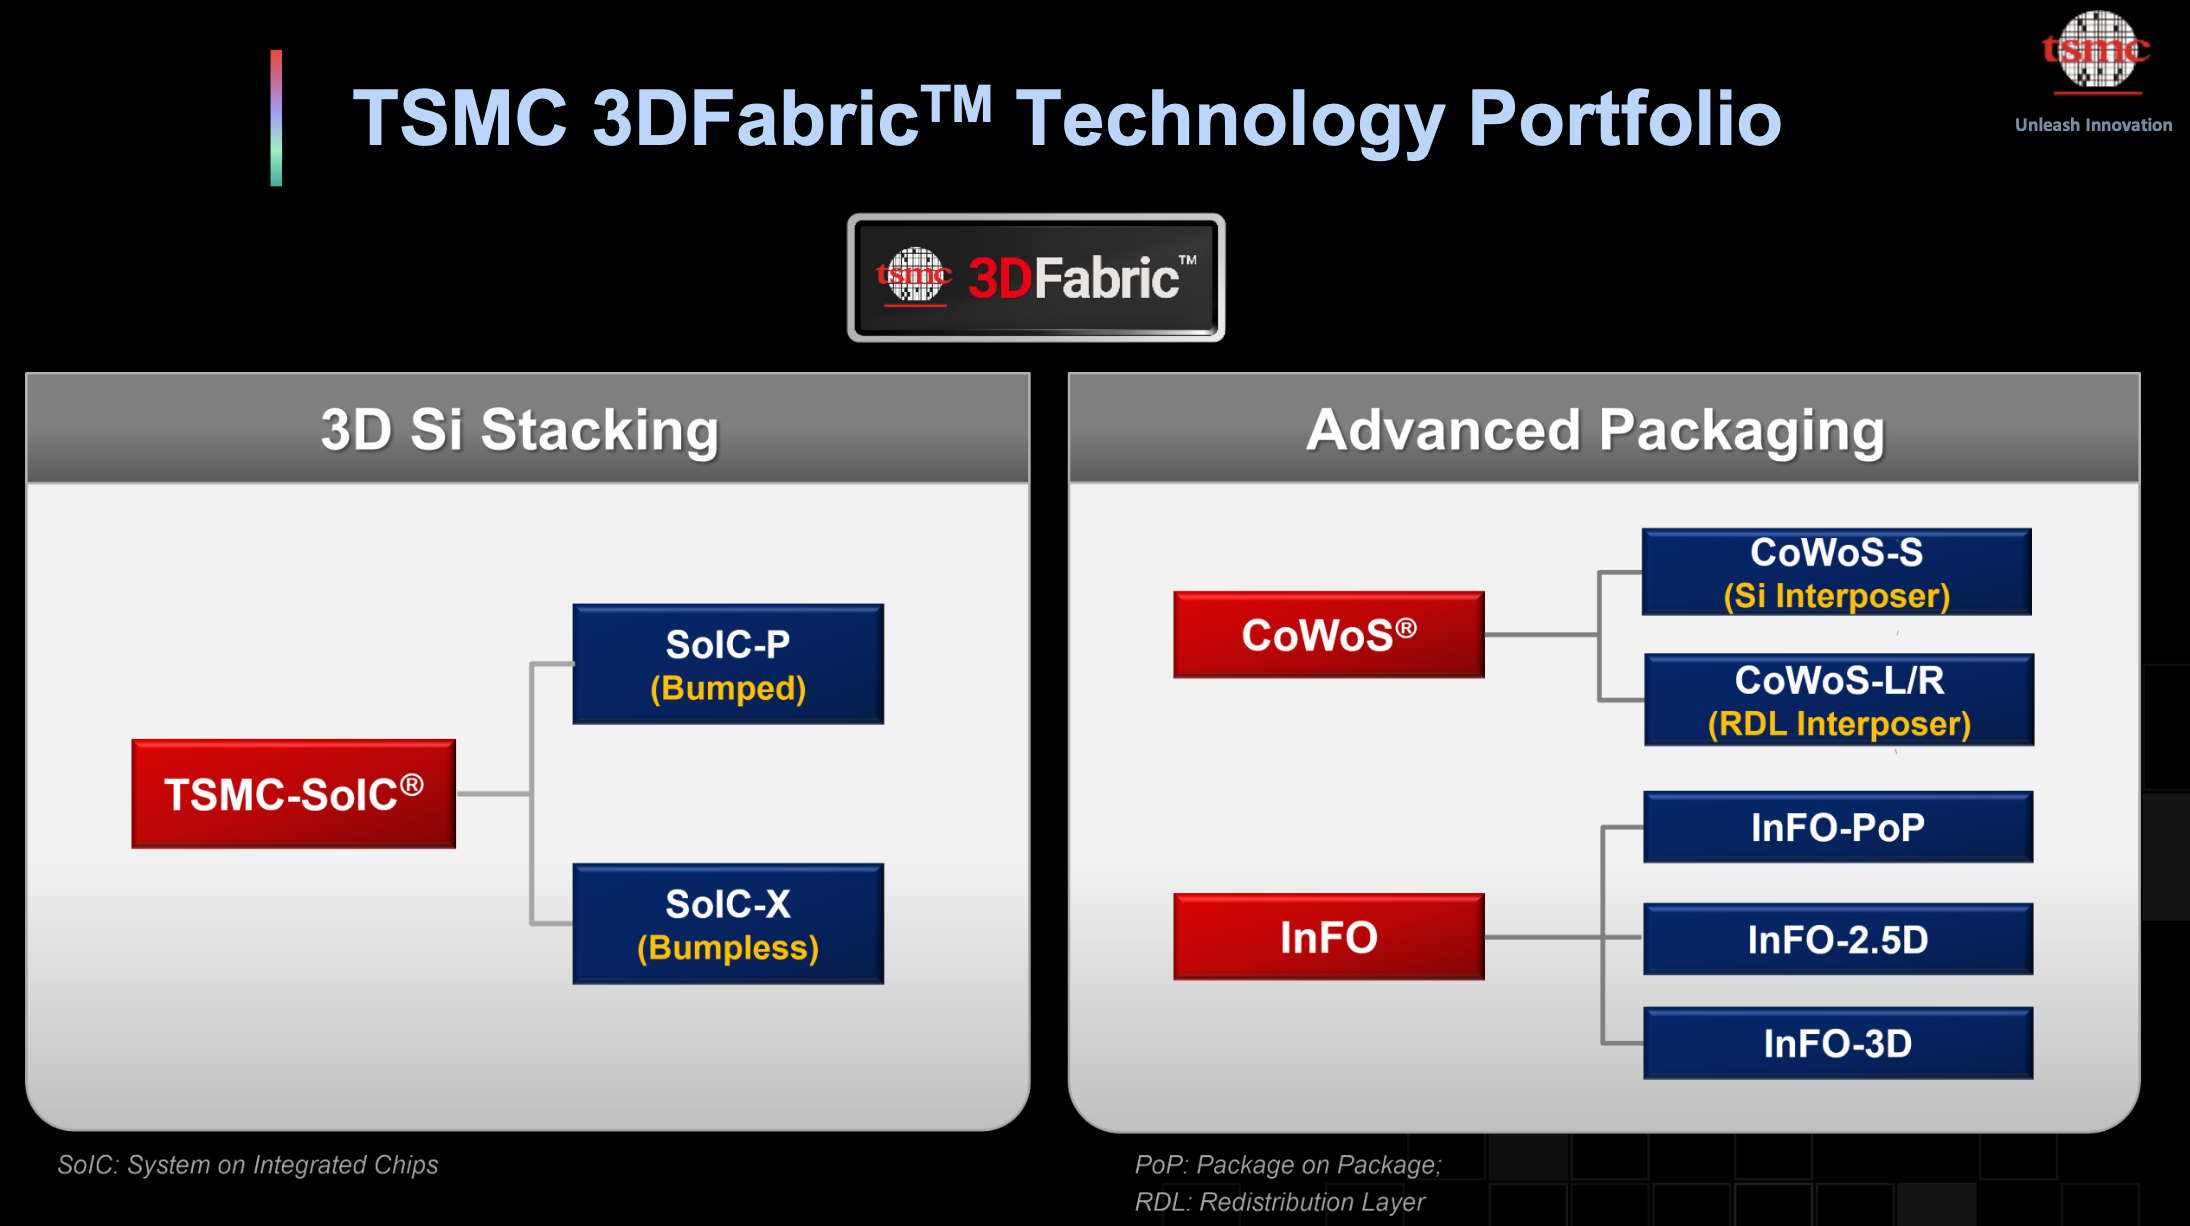 TSMC 3DFabric Technology Portfolio